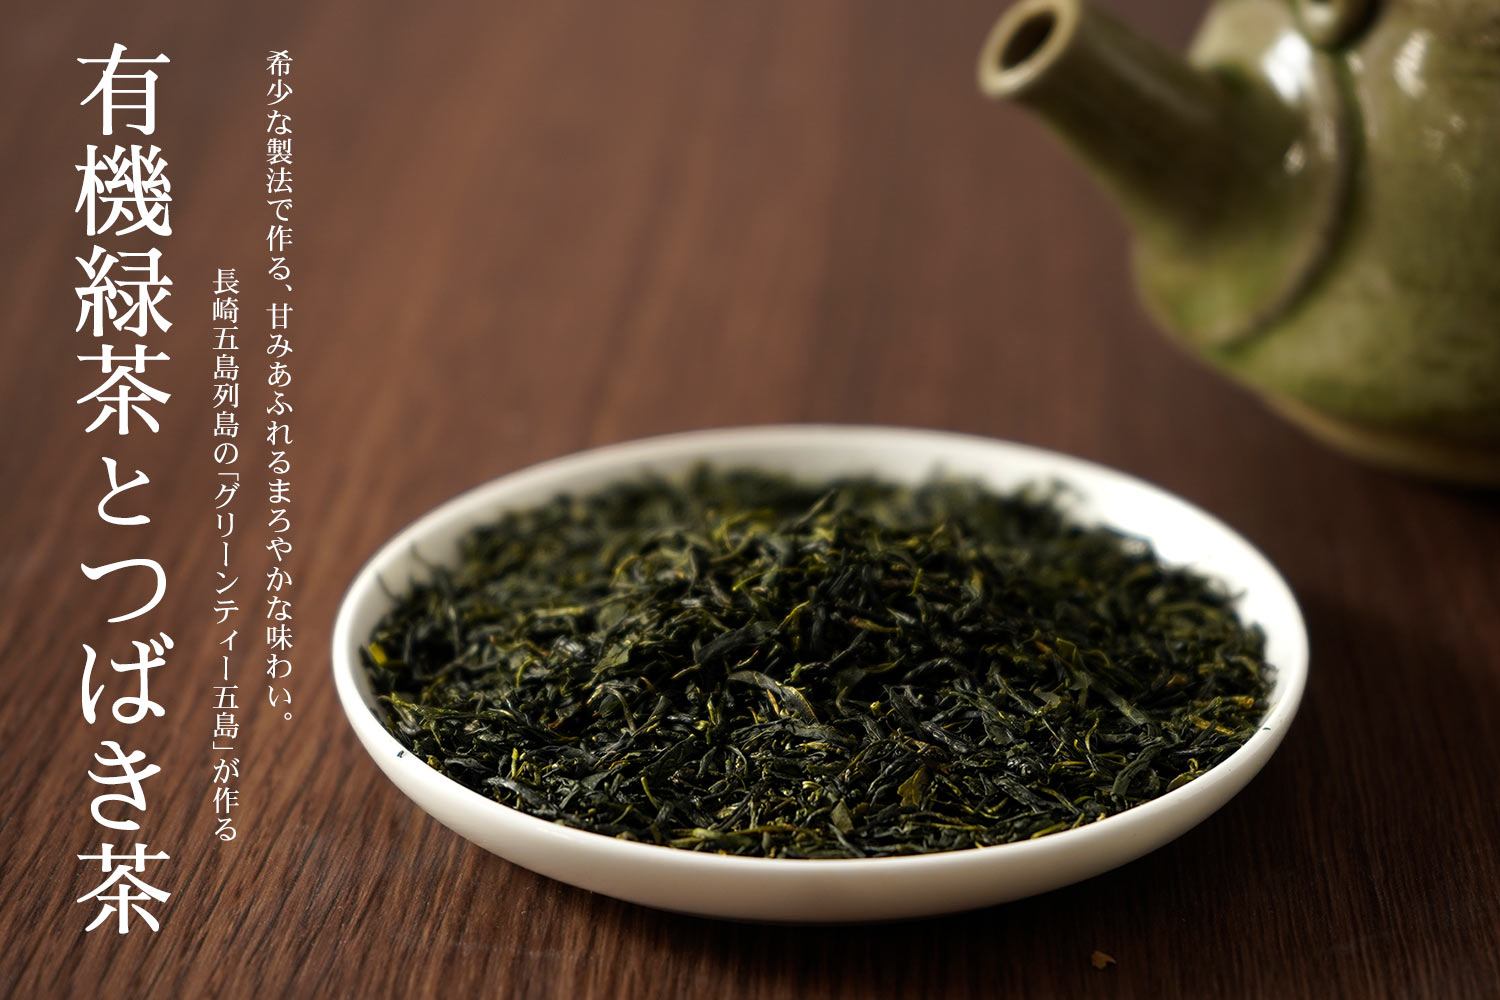 深蒸し茶の甘みあふれるまろやかな味わい。長崎五島列島のグリーンティー五島が作る「有機緑茶とつばき茶」